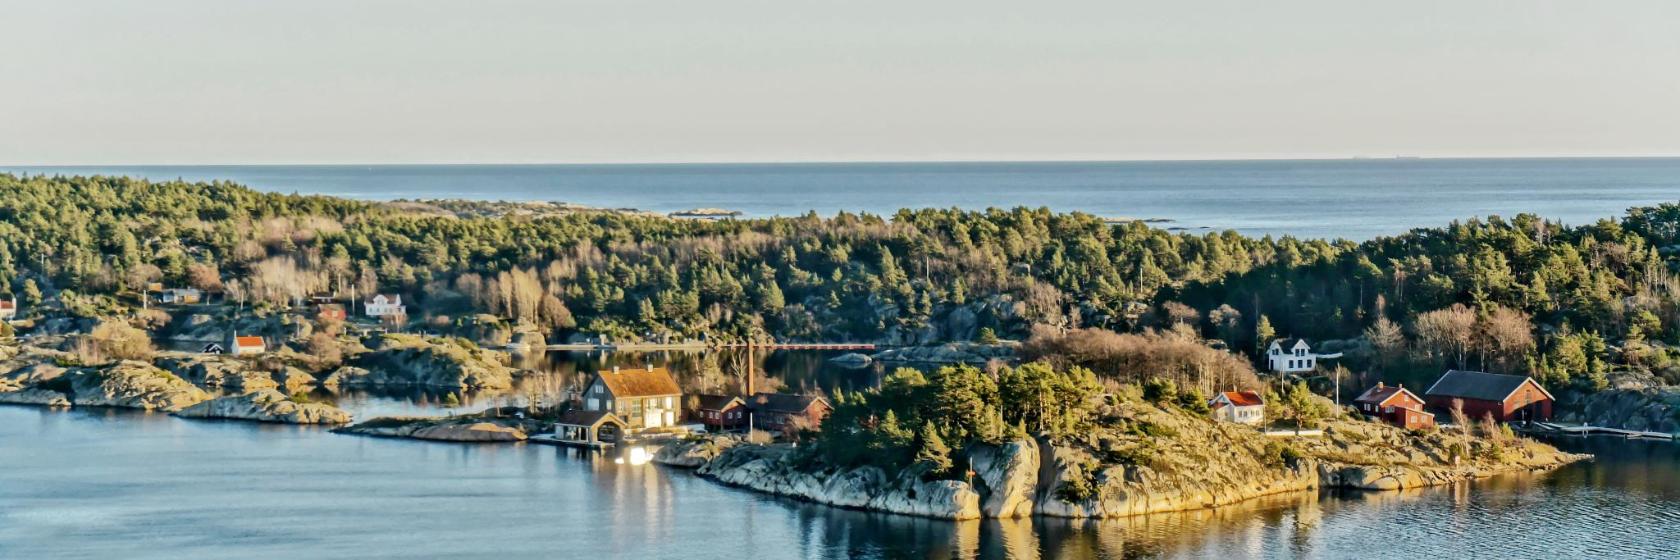 Vest-Agder: De 10 beste hotellene og overnattingssteder i Vest-Agder og  omegn (Norge)